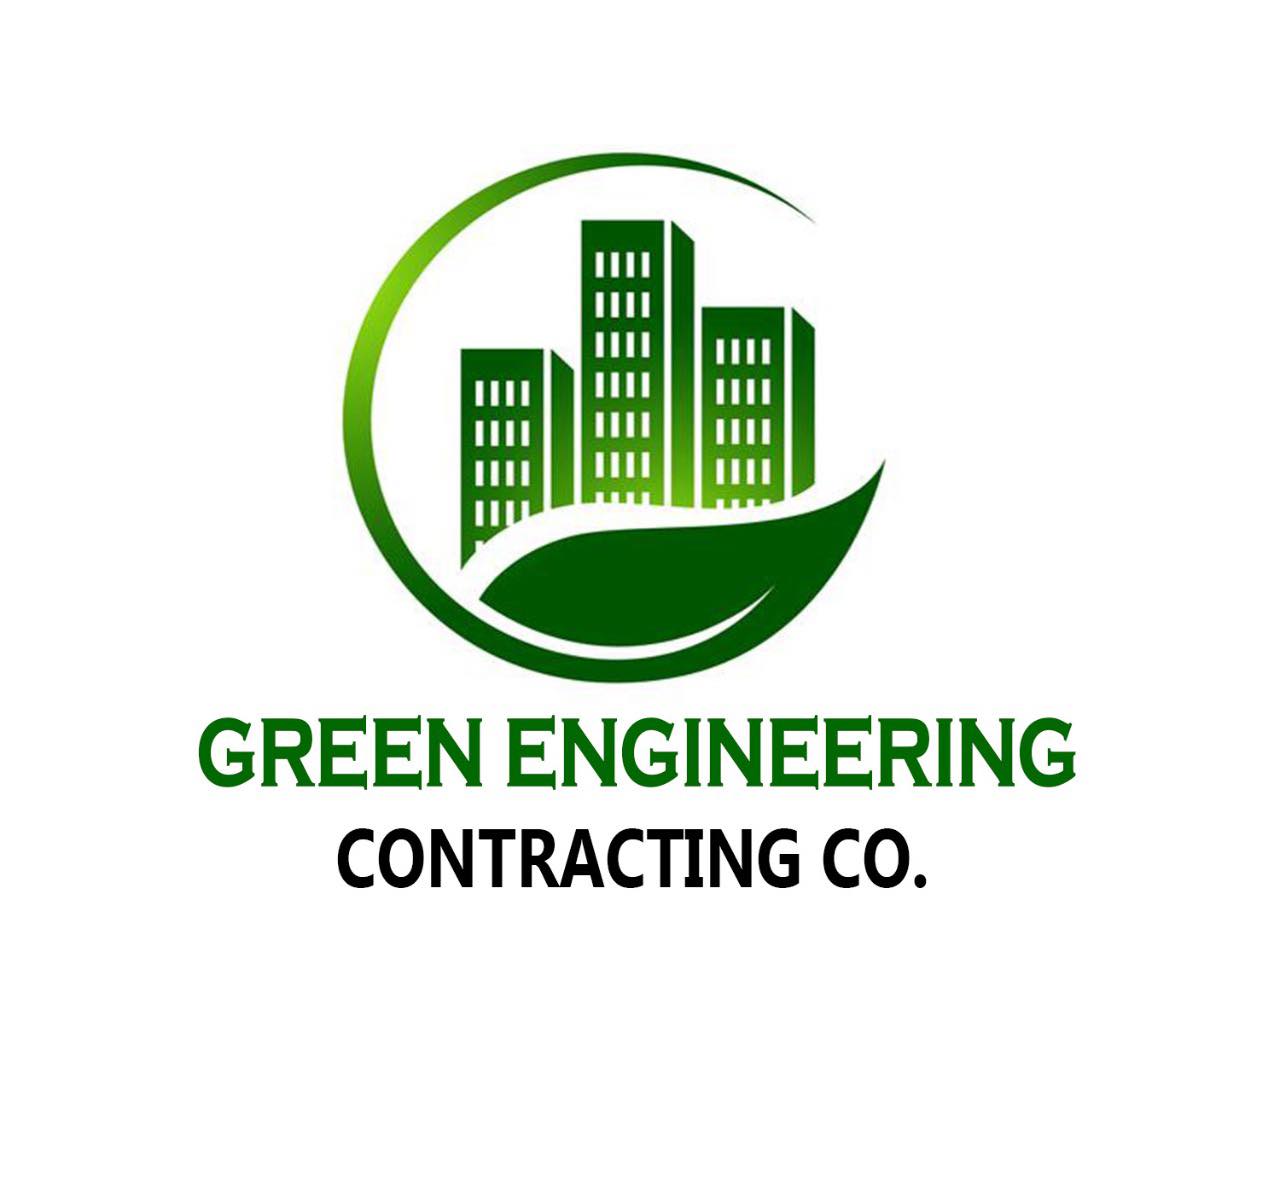 Green Engineering Contracting